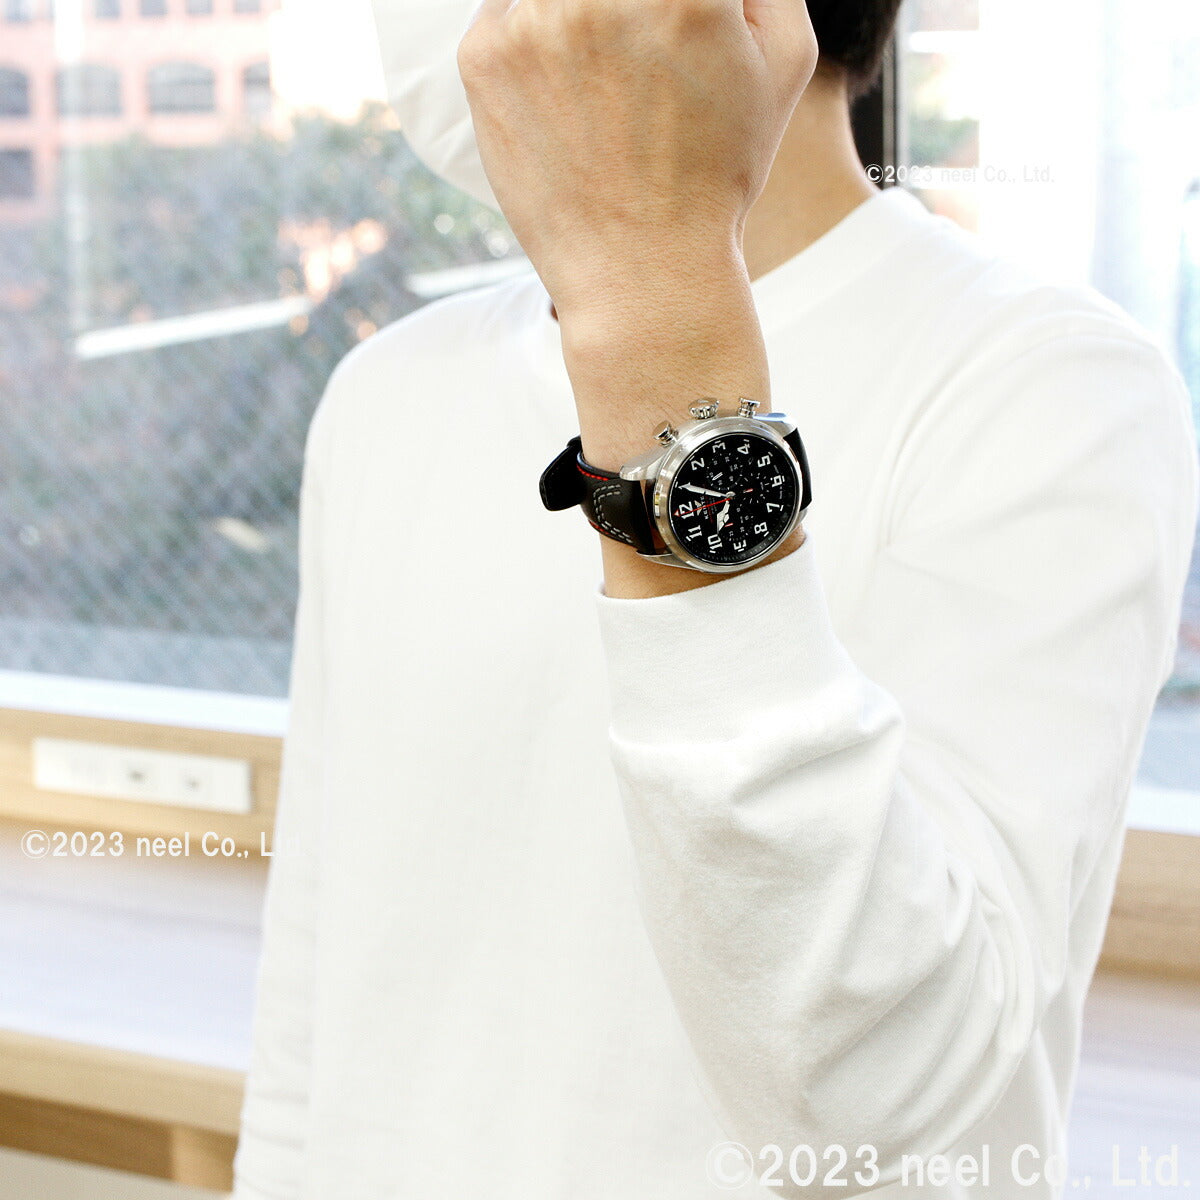 ケンテックス KENTEX 腕時計 時計 メンズ 耐磁時計 自動巻き クロノグラフ プロガウス 日本製 S769X-7